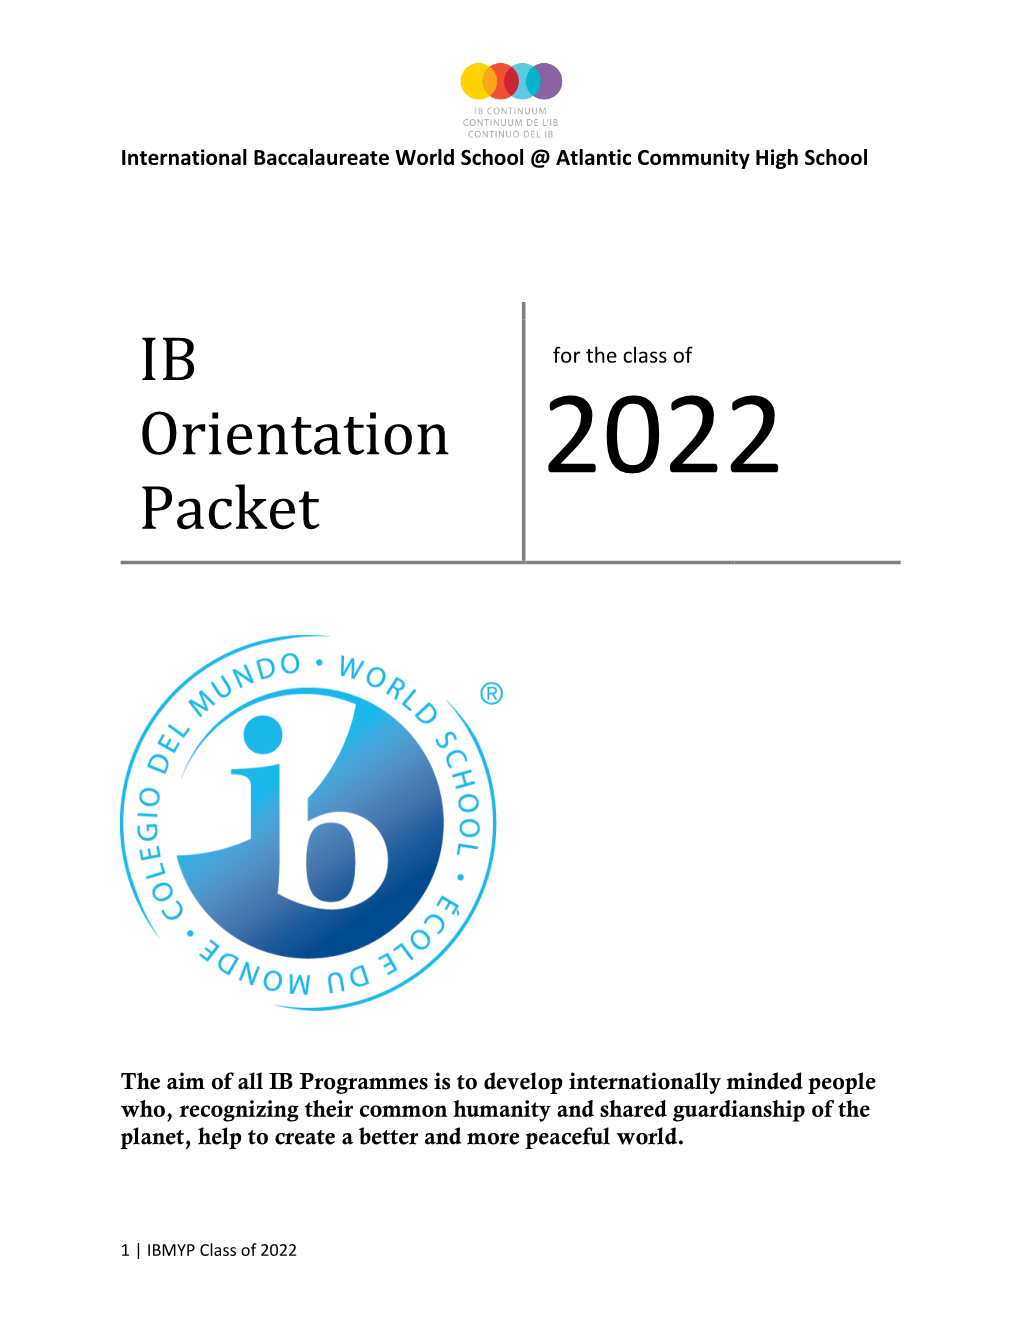 Class of 2018 Orietnation Packet.Docx